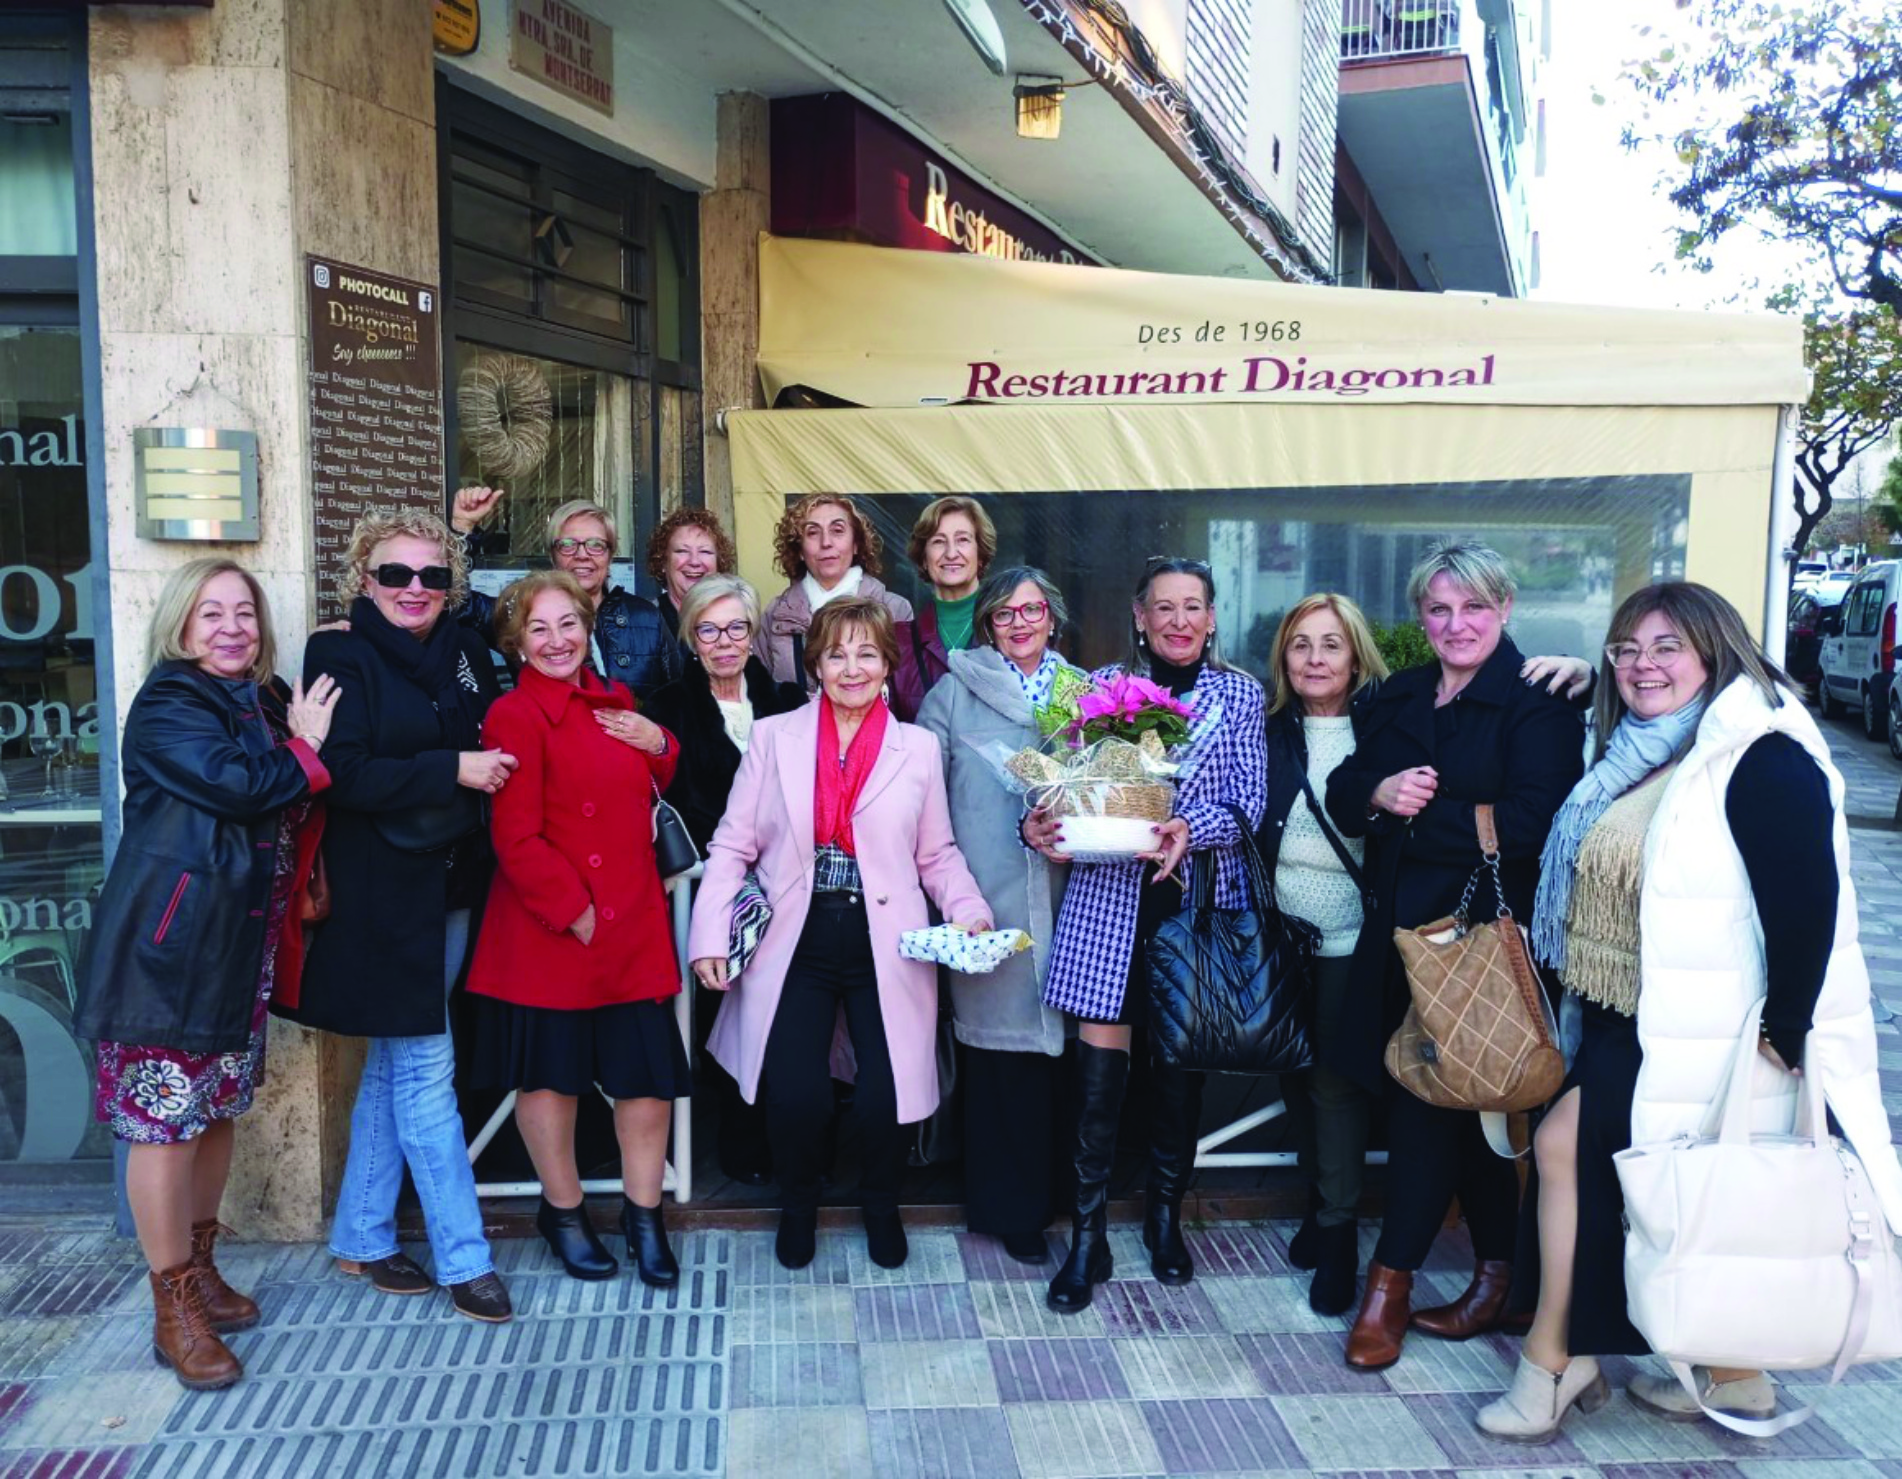 Un restaurante del pueblo del president Aragonès gana un premio de la lotería de Navidad